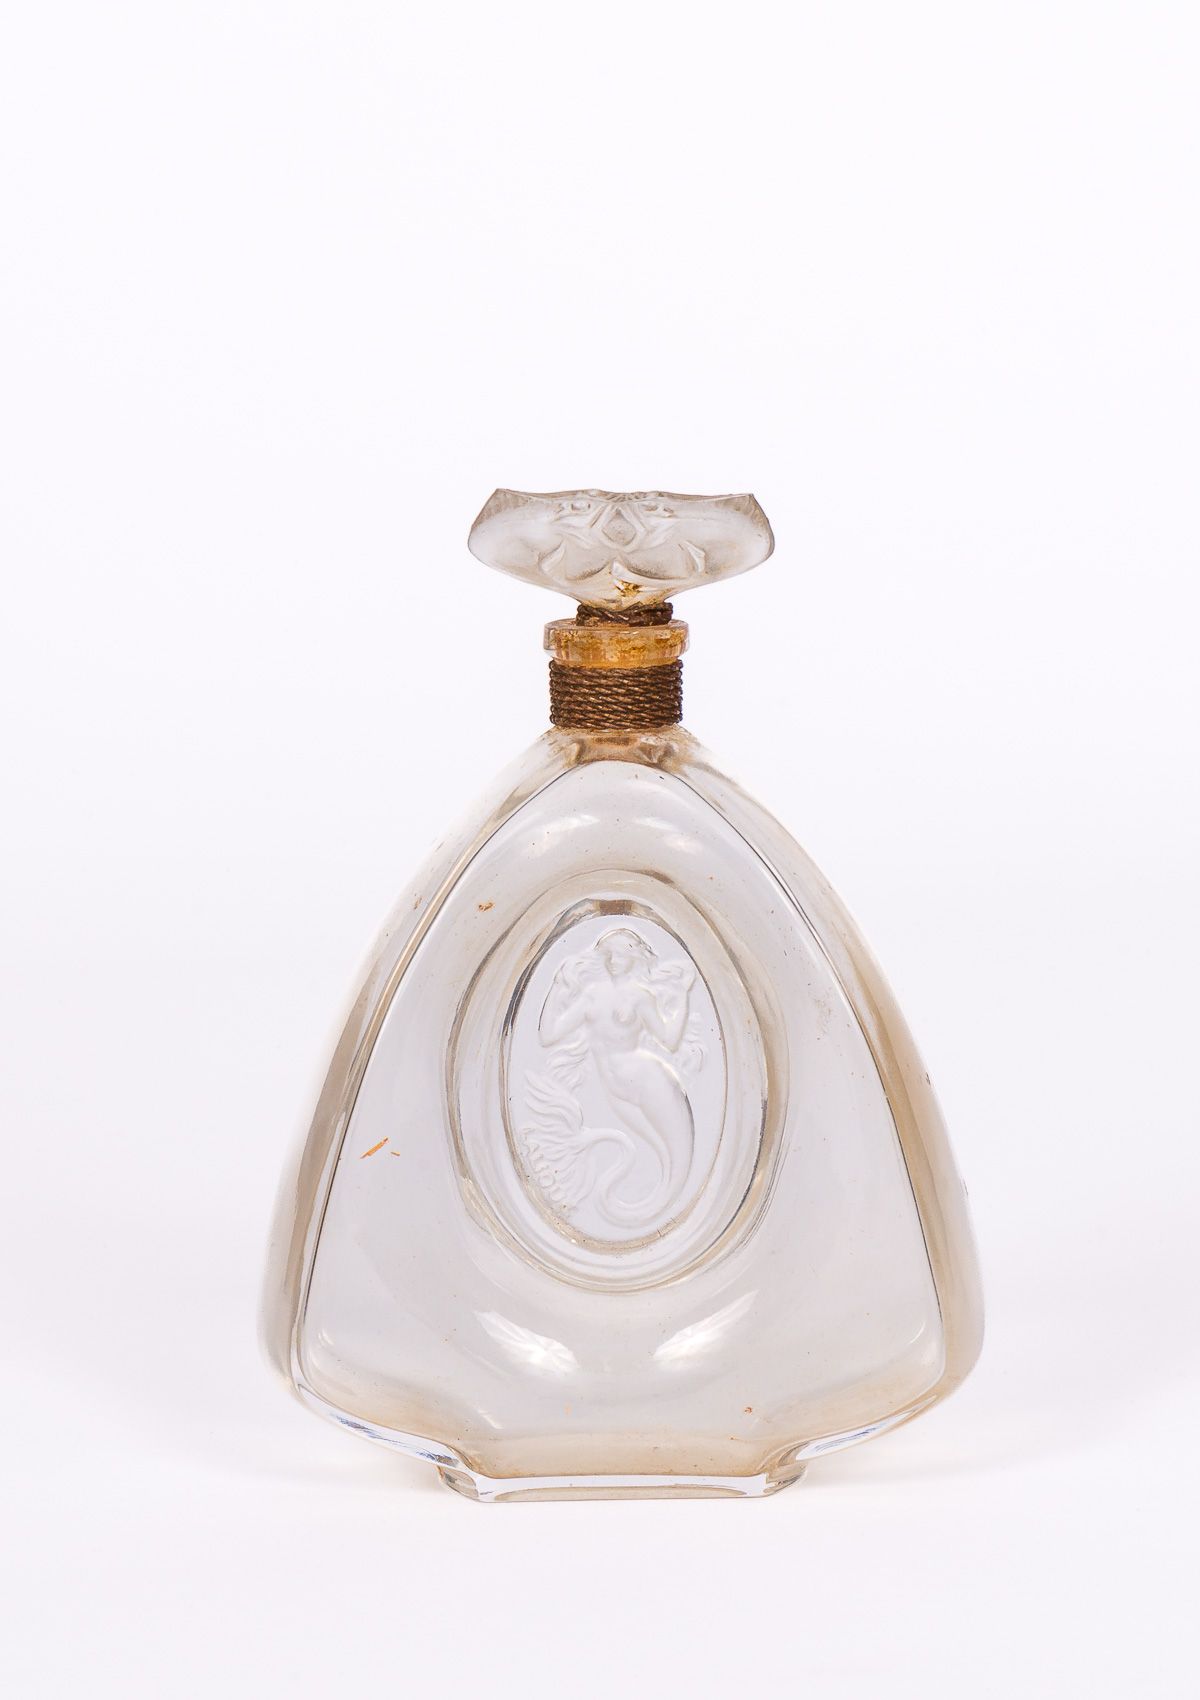 Null "La Sirena" - para BURMANN ( 1920 )

Rara botella diseñada y editada en 191&hellip;